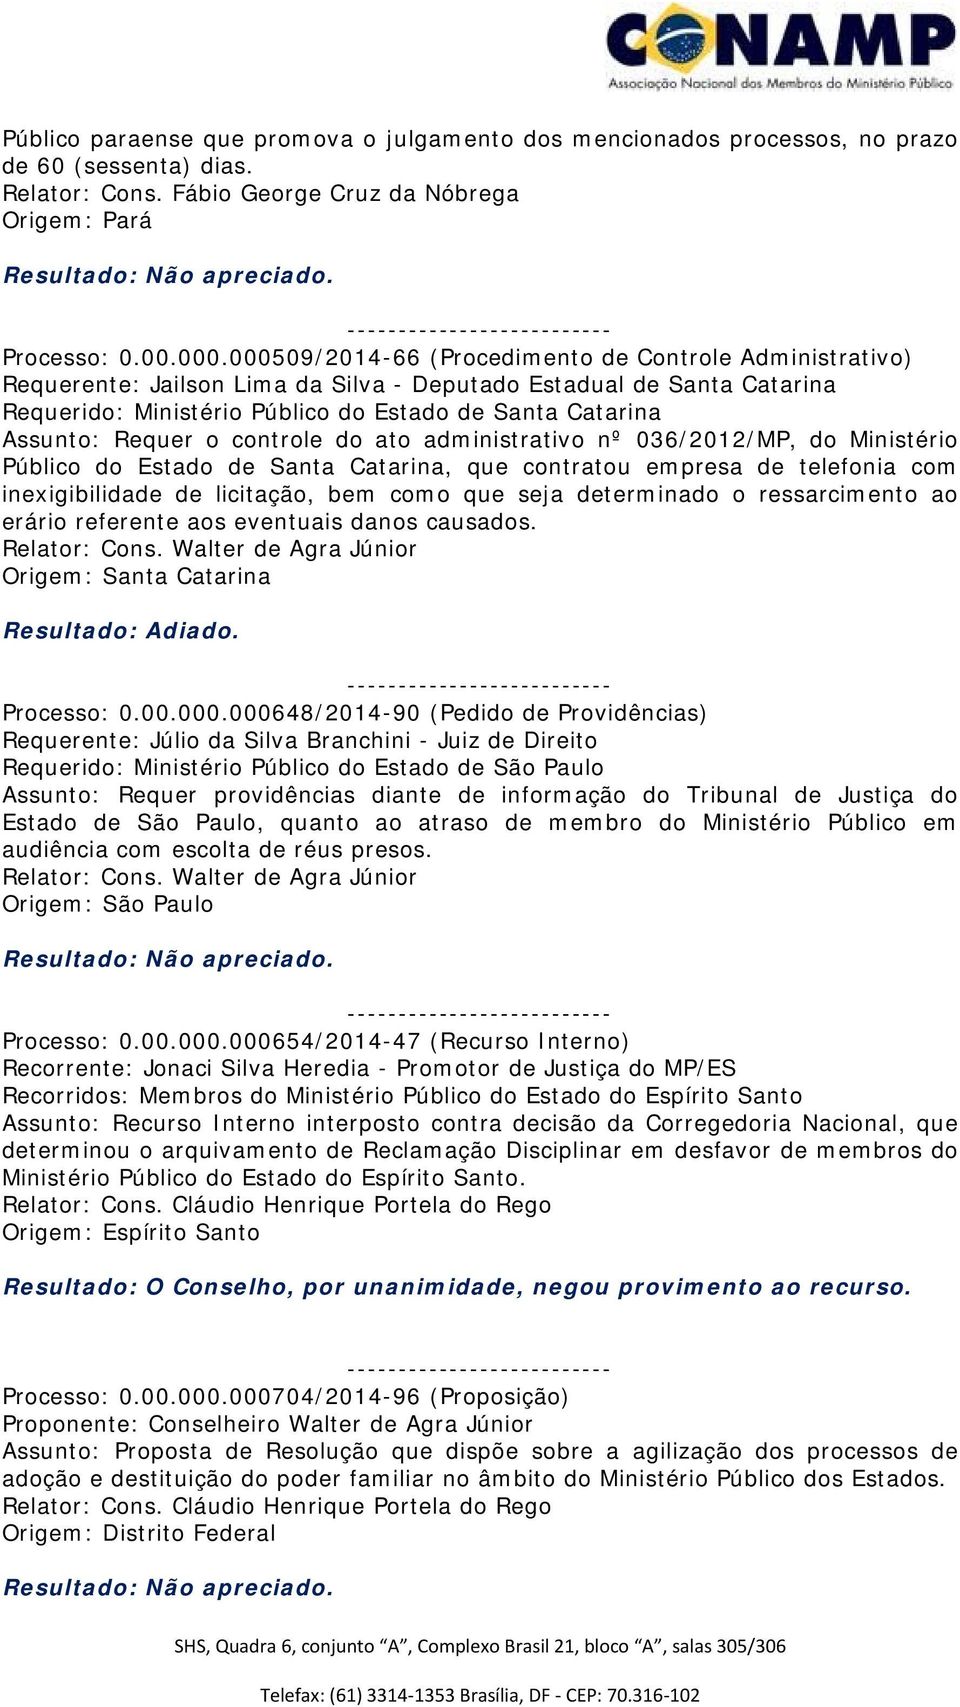 Requer o controle do ato administrativo nº 036/2012/MP, do Ministério Público do Estado de Santa Catarina, que contratou empresa de telefonia com inexigibilidade de licitação, bem como que seja